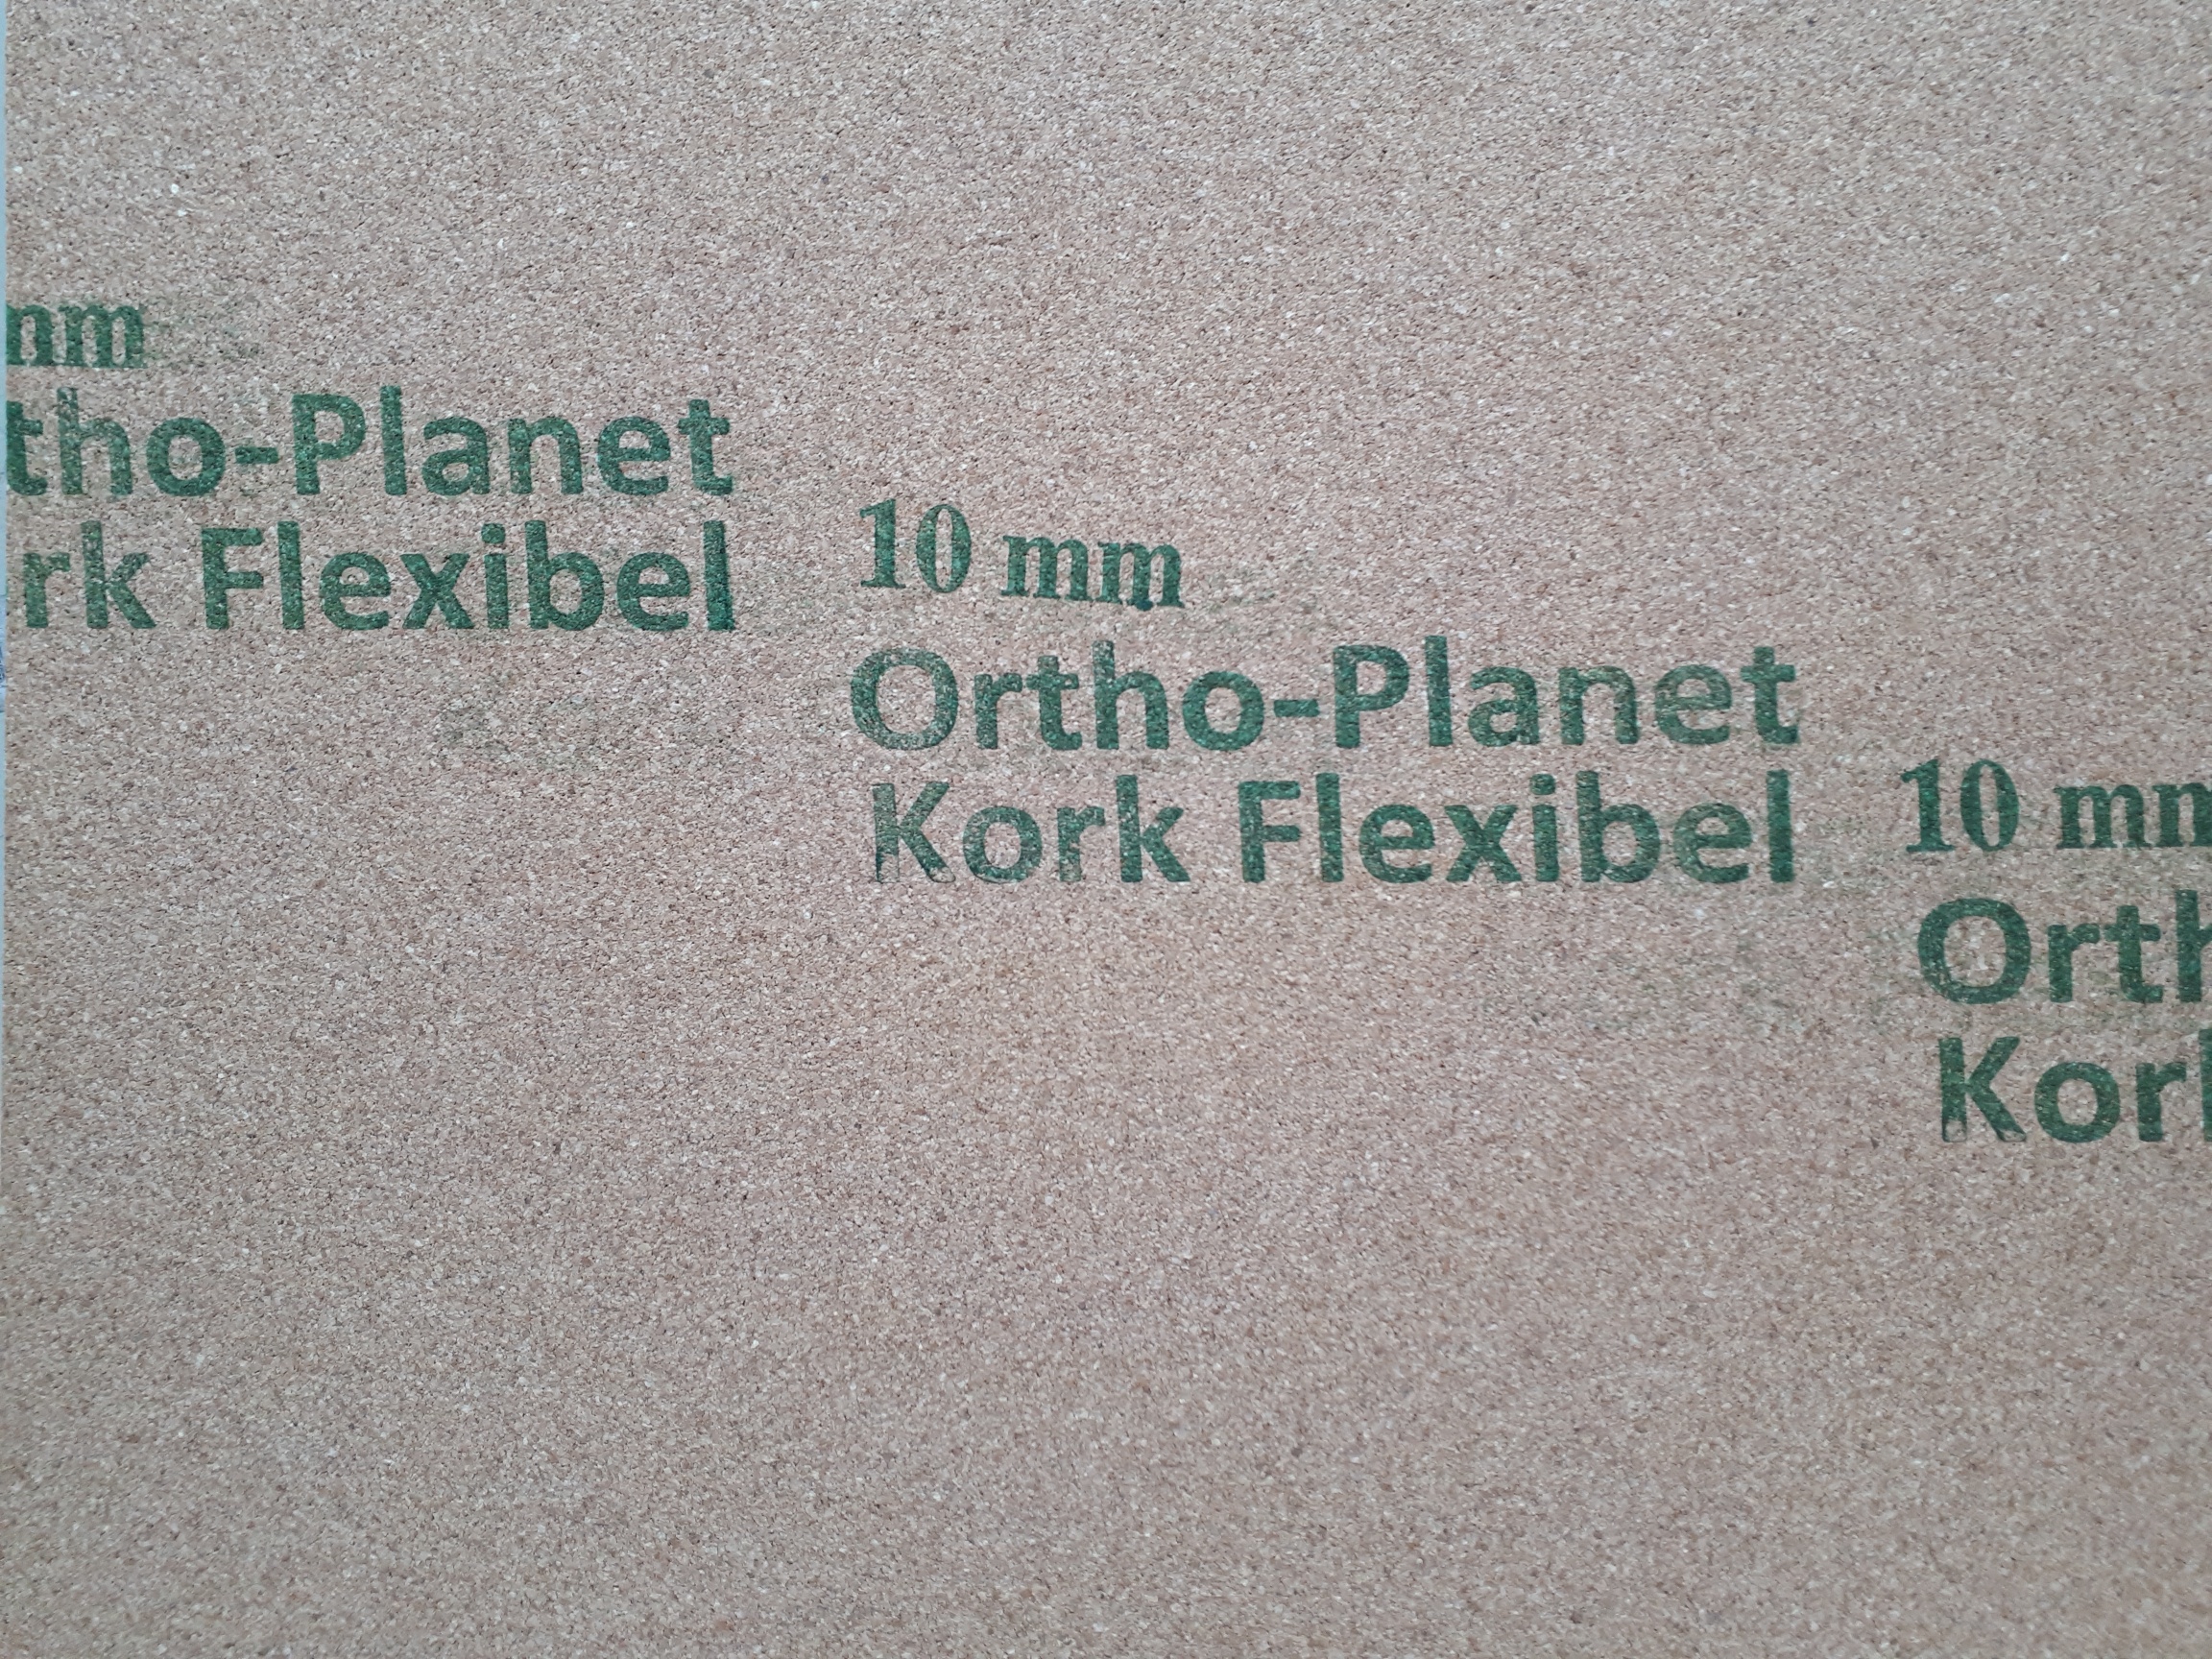 Ortho-Planet-Kork flexibel